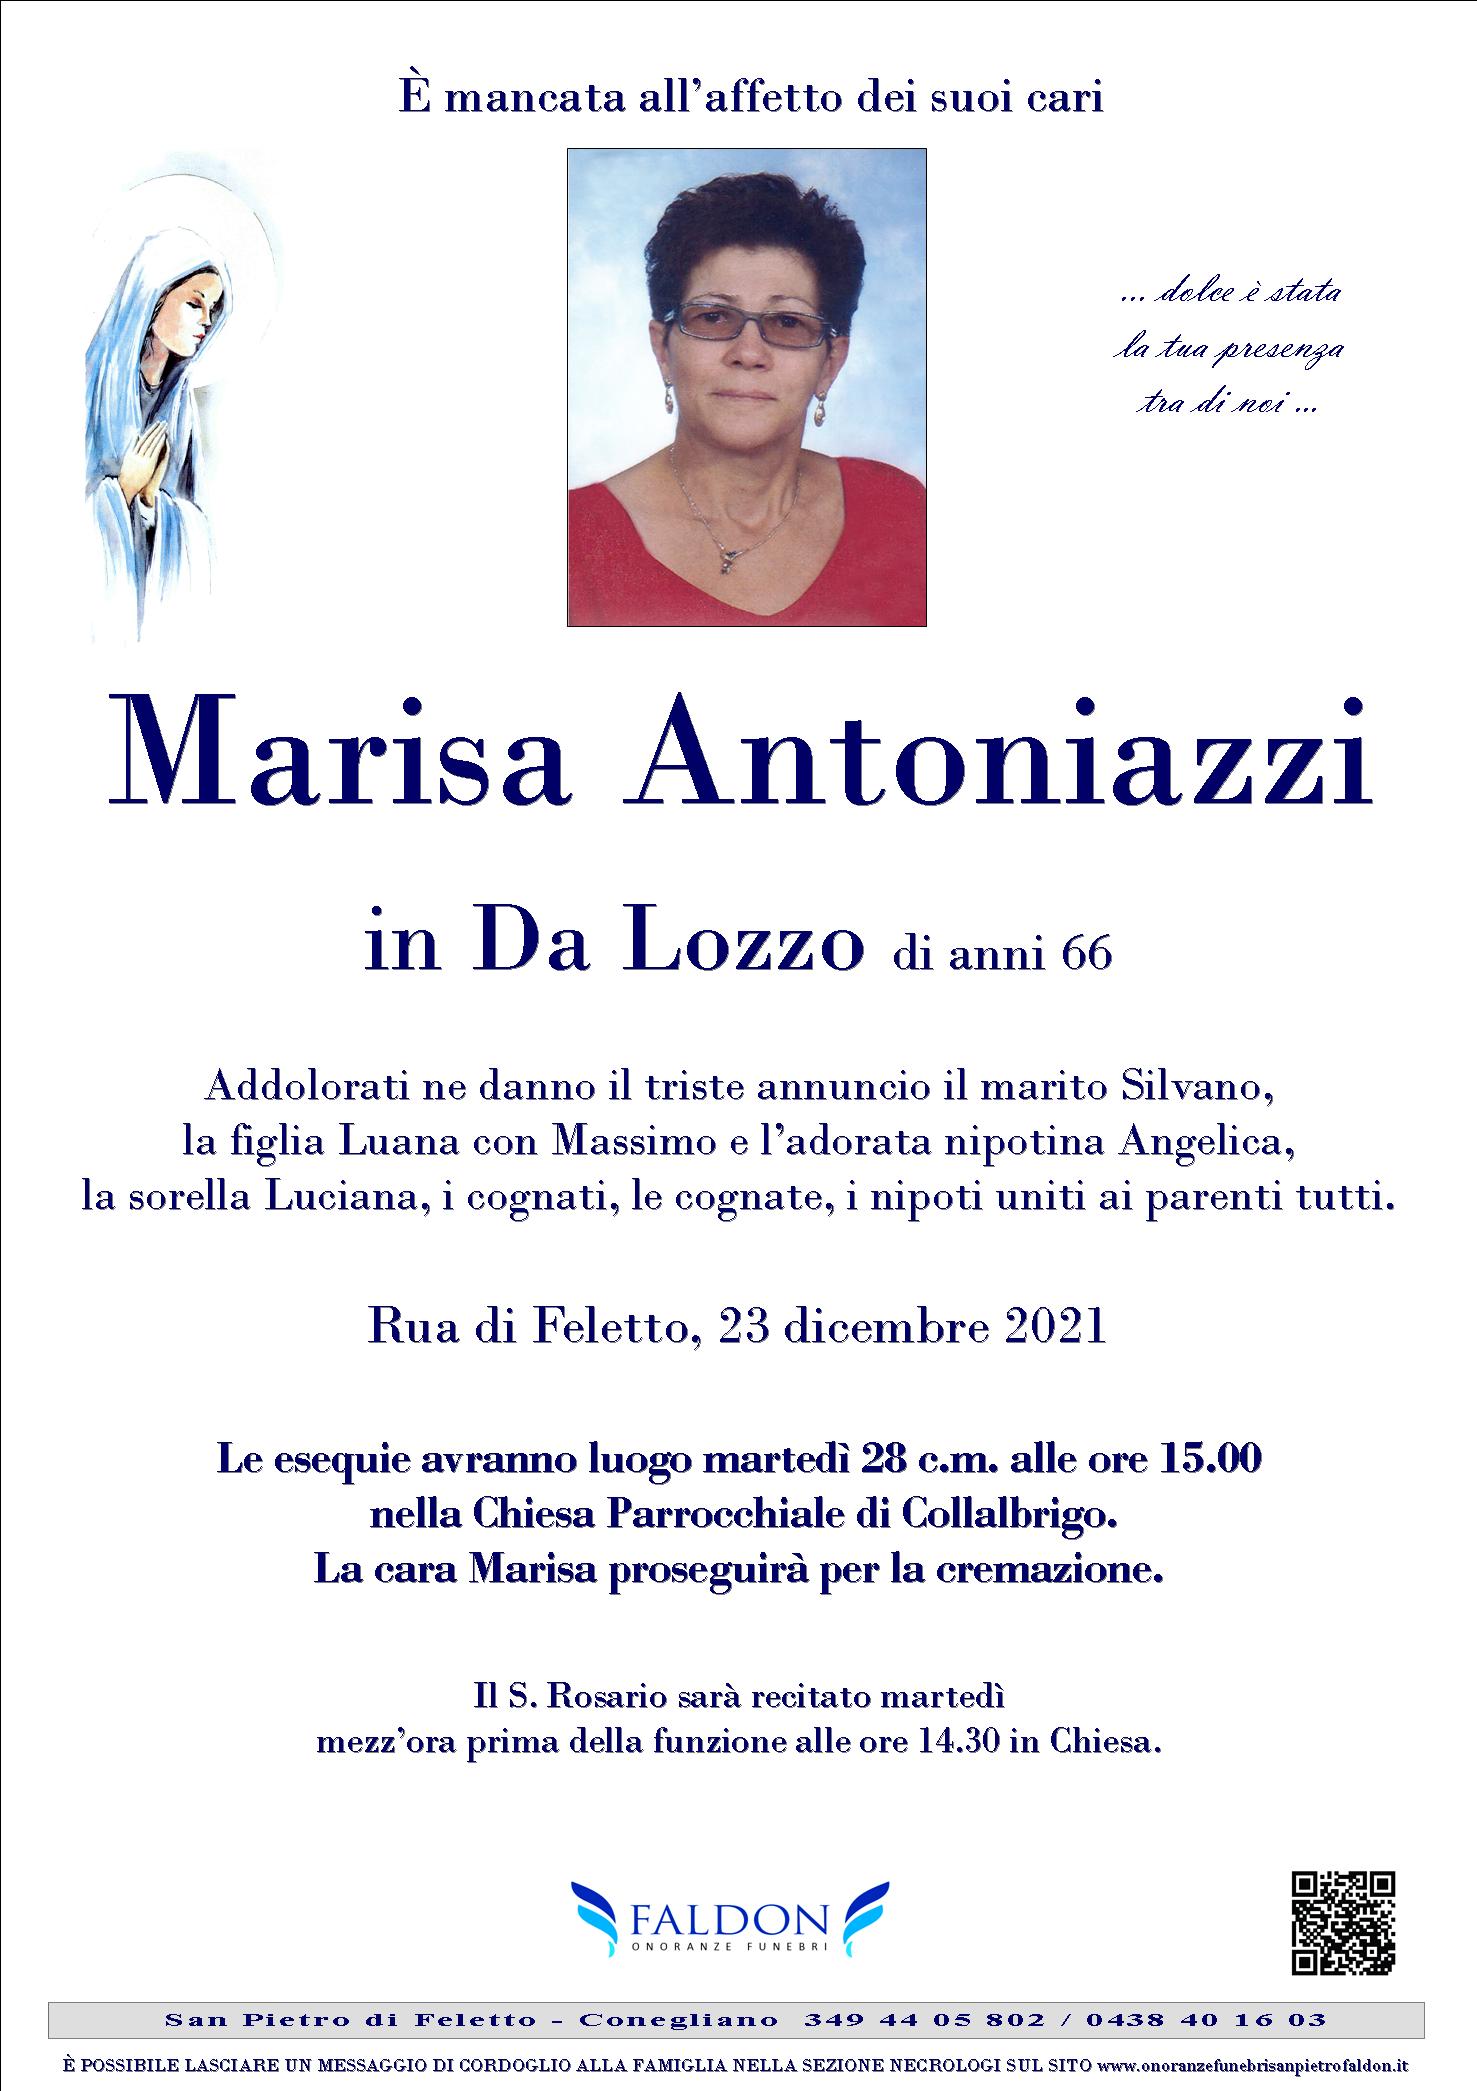 Marisa Antoniazzi